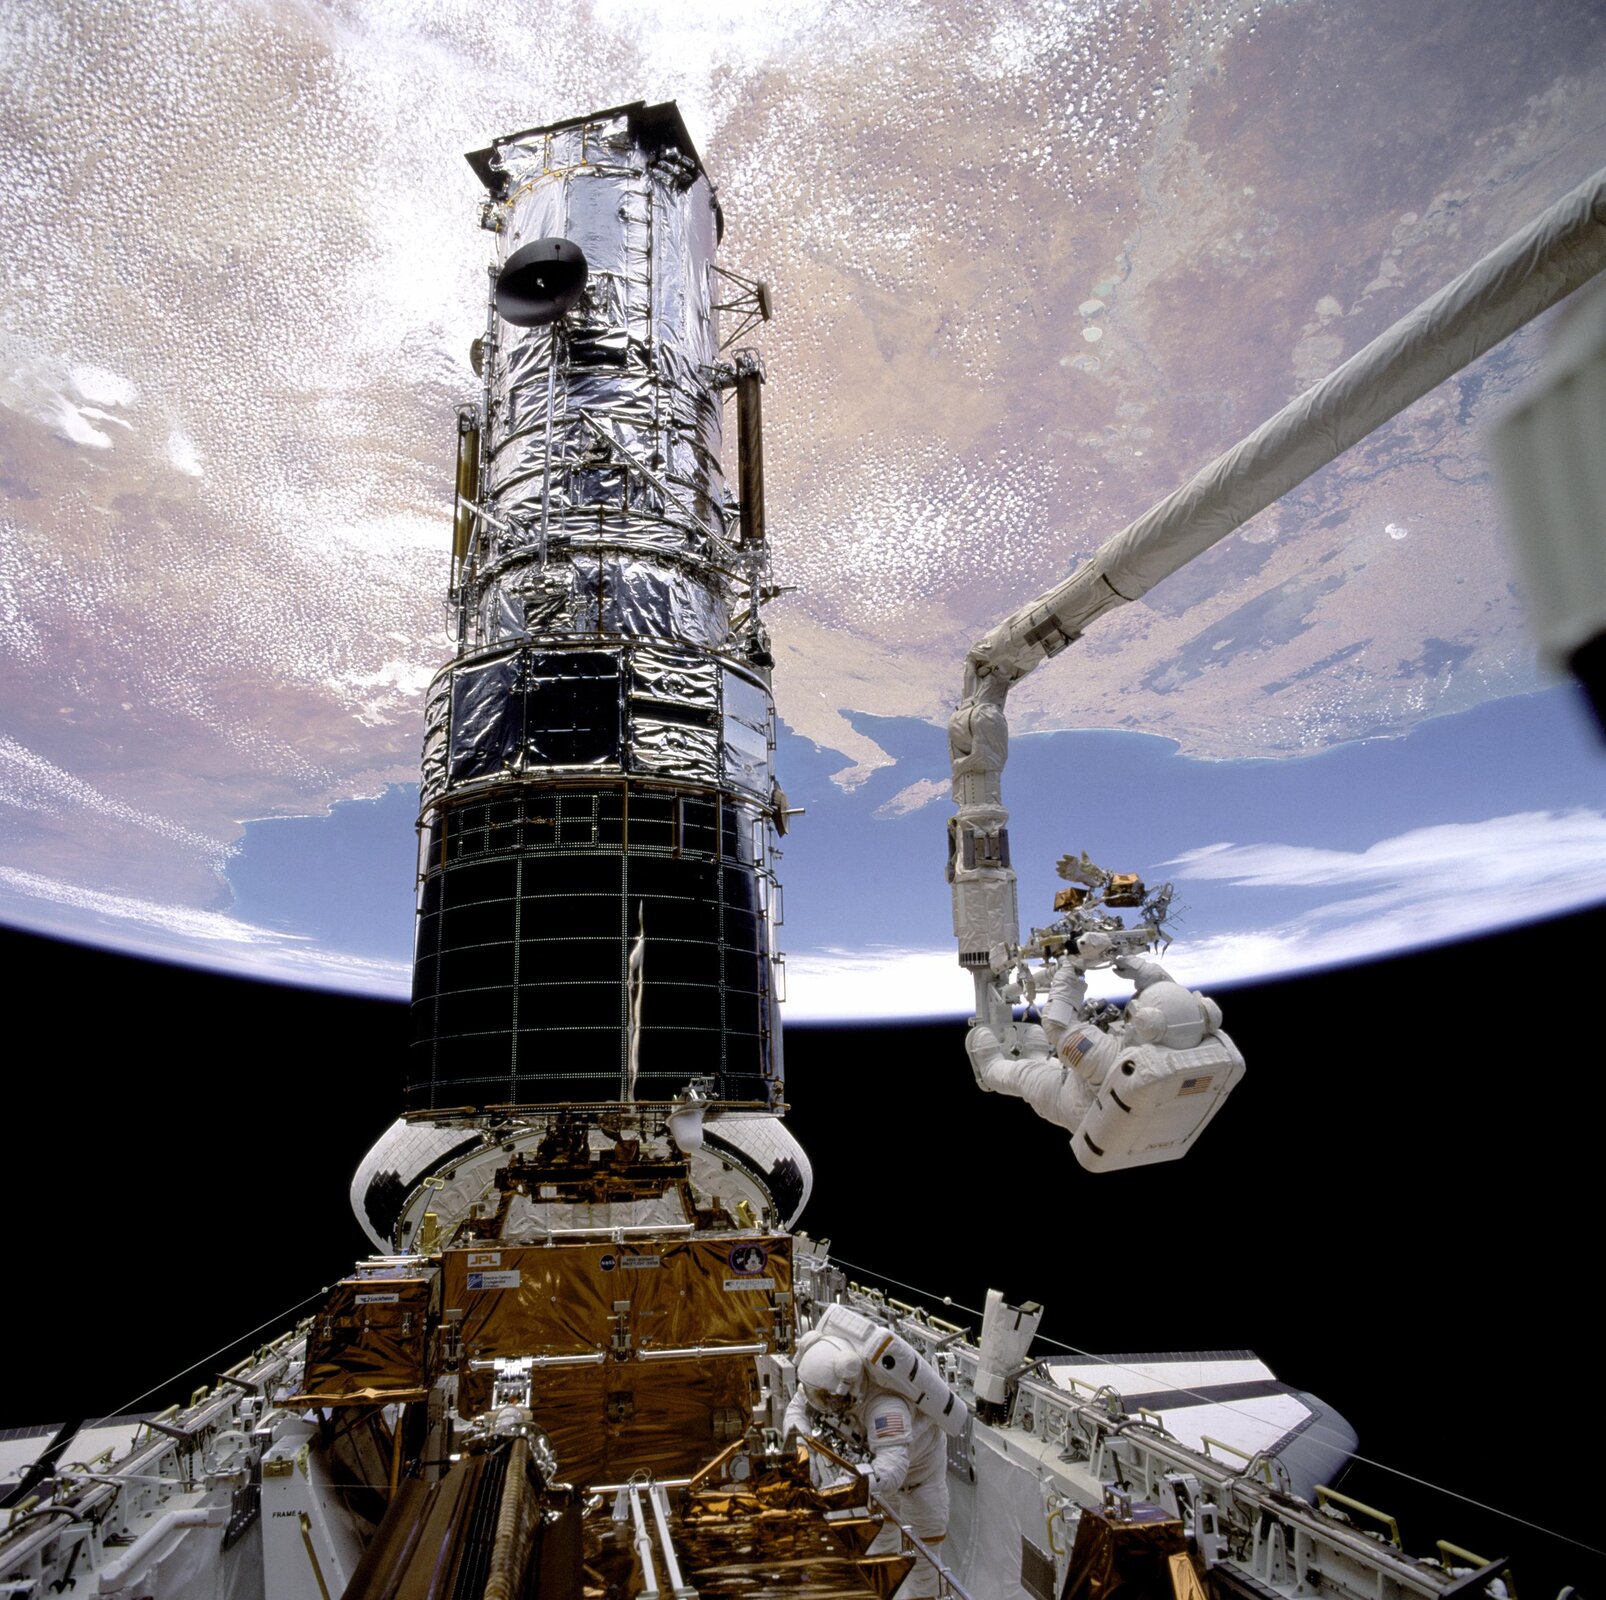 Rys. 1b. Zdjęcie prezentuje teleskop Hubble'a, w ujęciu pionowym. Nad nim unosi się Ziemia. W prezentowanej części teleskopu znajduje się cały jego układ optyczny (zwierciadła) służący do obrazowania danych zarejestrowanych przez urządzenie. Dolna podstawa cylindrycznego kształtu przytwierdzona jest do płaskiej stalowej konstrukcji. Po lewej stronie obok cylindrycznej części teleskopu widoczne jest białe, stalowe ramię wyciągnięte w kierunku teleskopu. Na końcu ramienia zawieszony jest astronauta ubrany w biały kombinezon kosmiczny. Astronauta dokonuje modernizacji teleskopu.